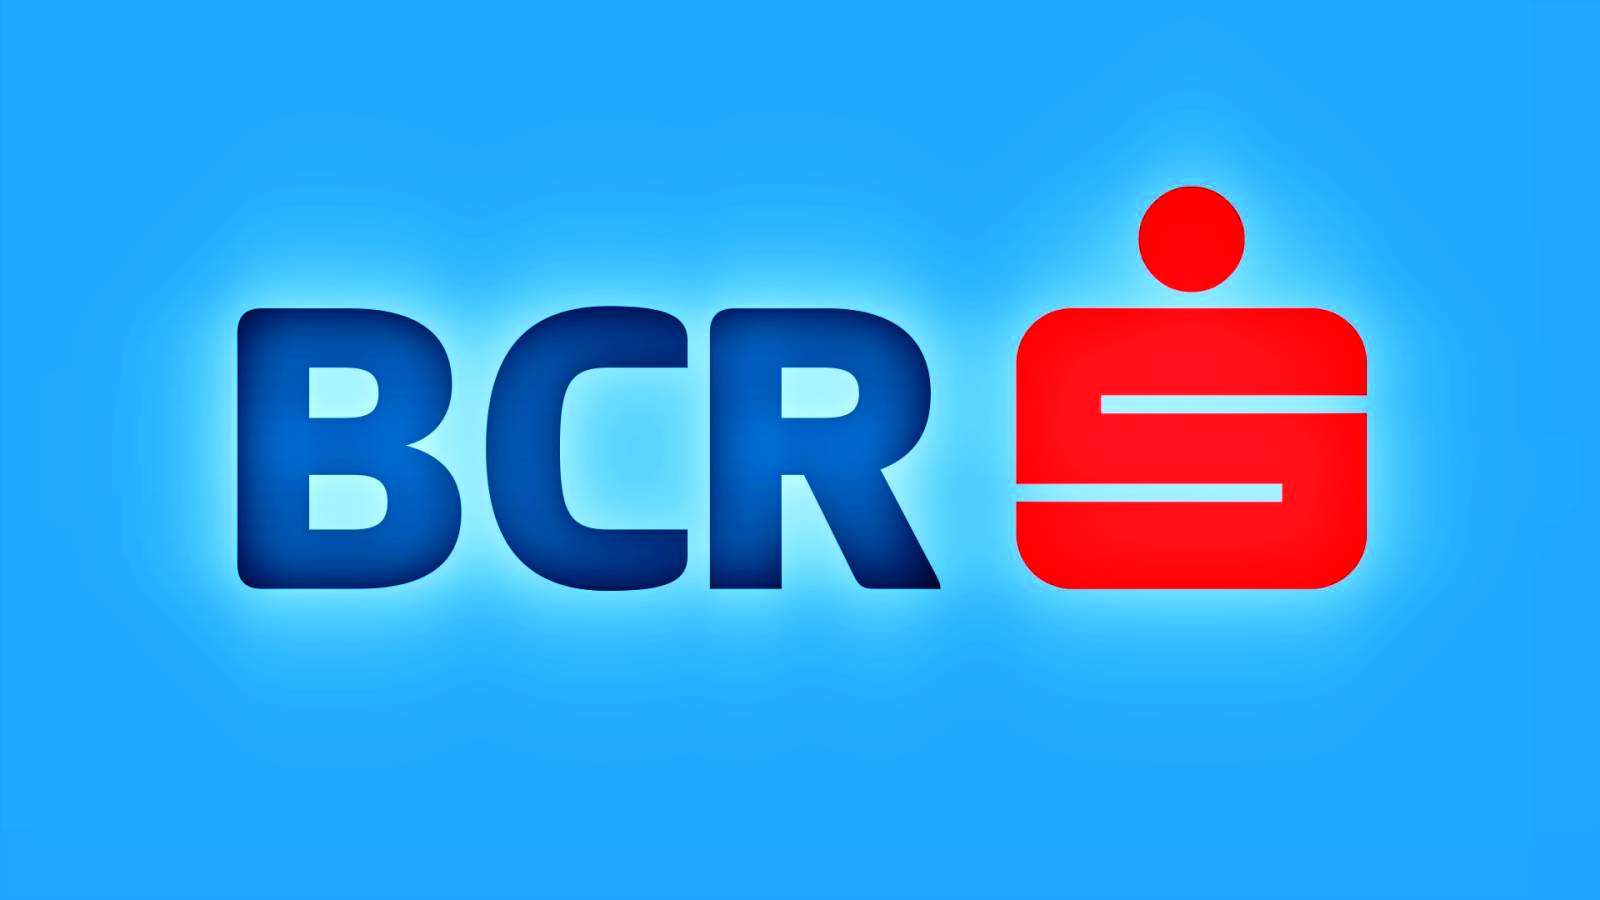 BCR Romania profile